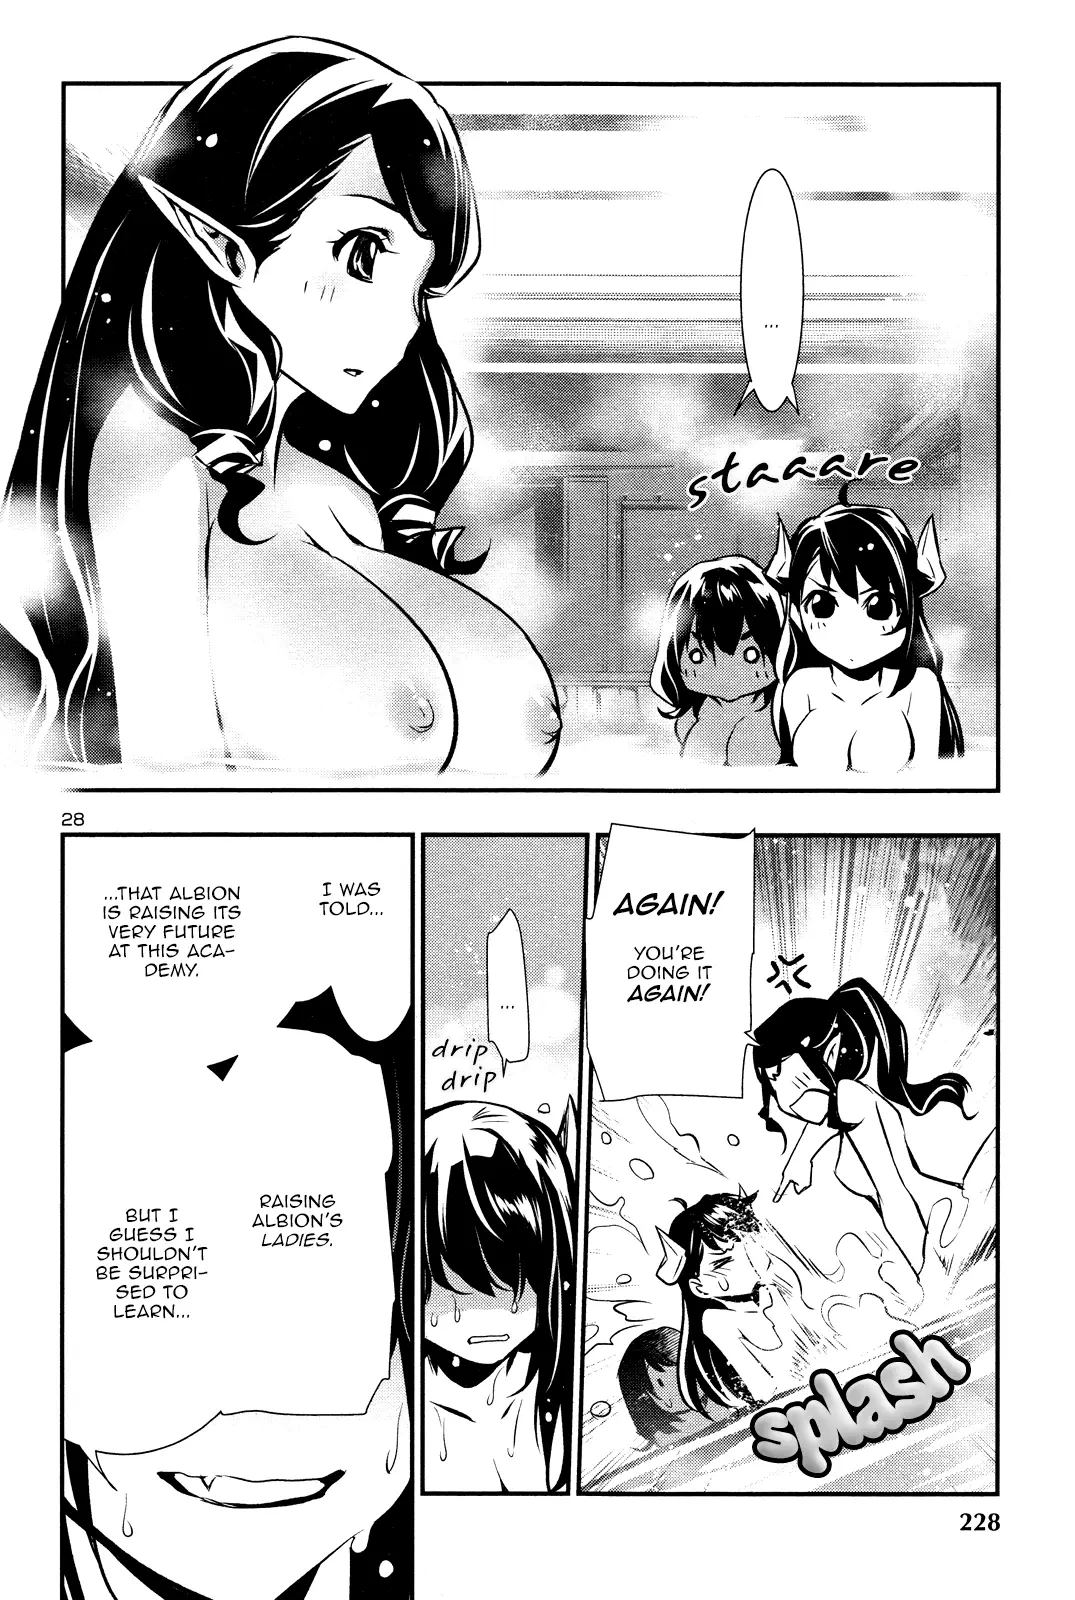 Shinju no Nectar - 32 page 27